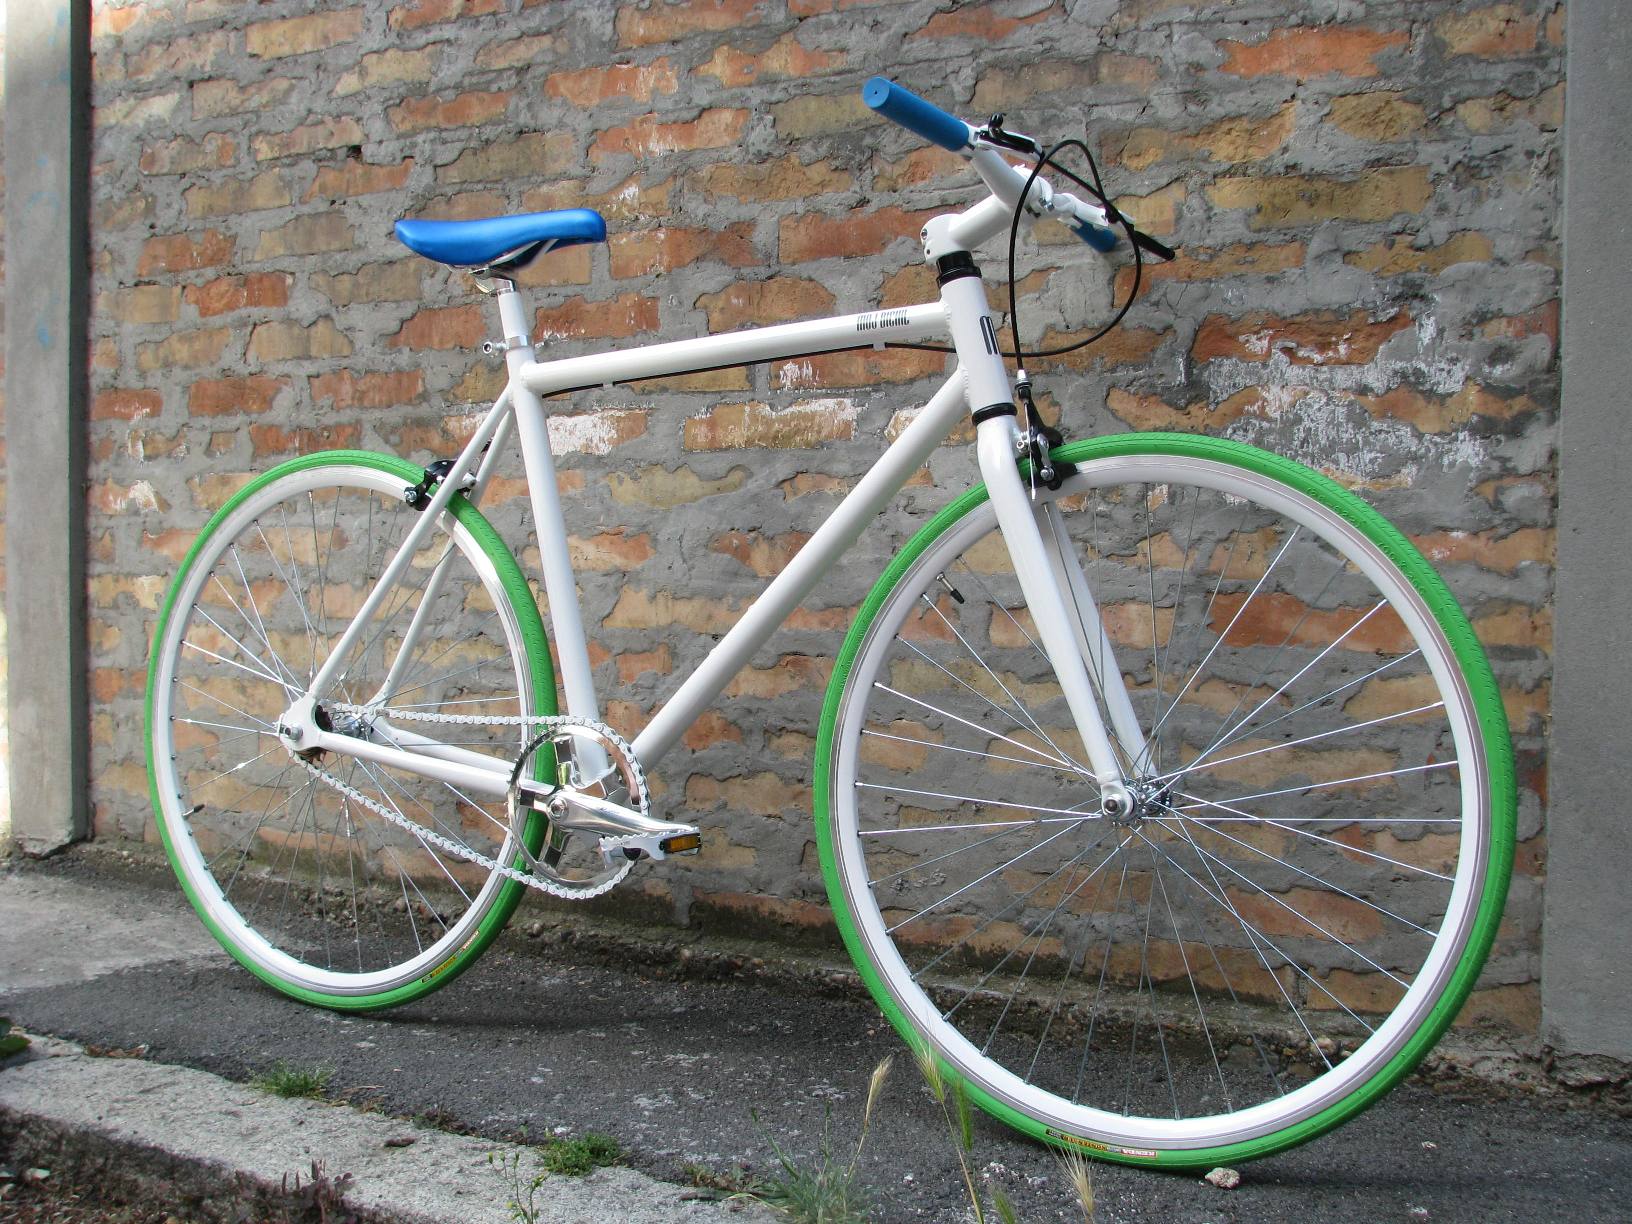 alu bike